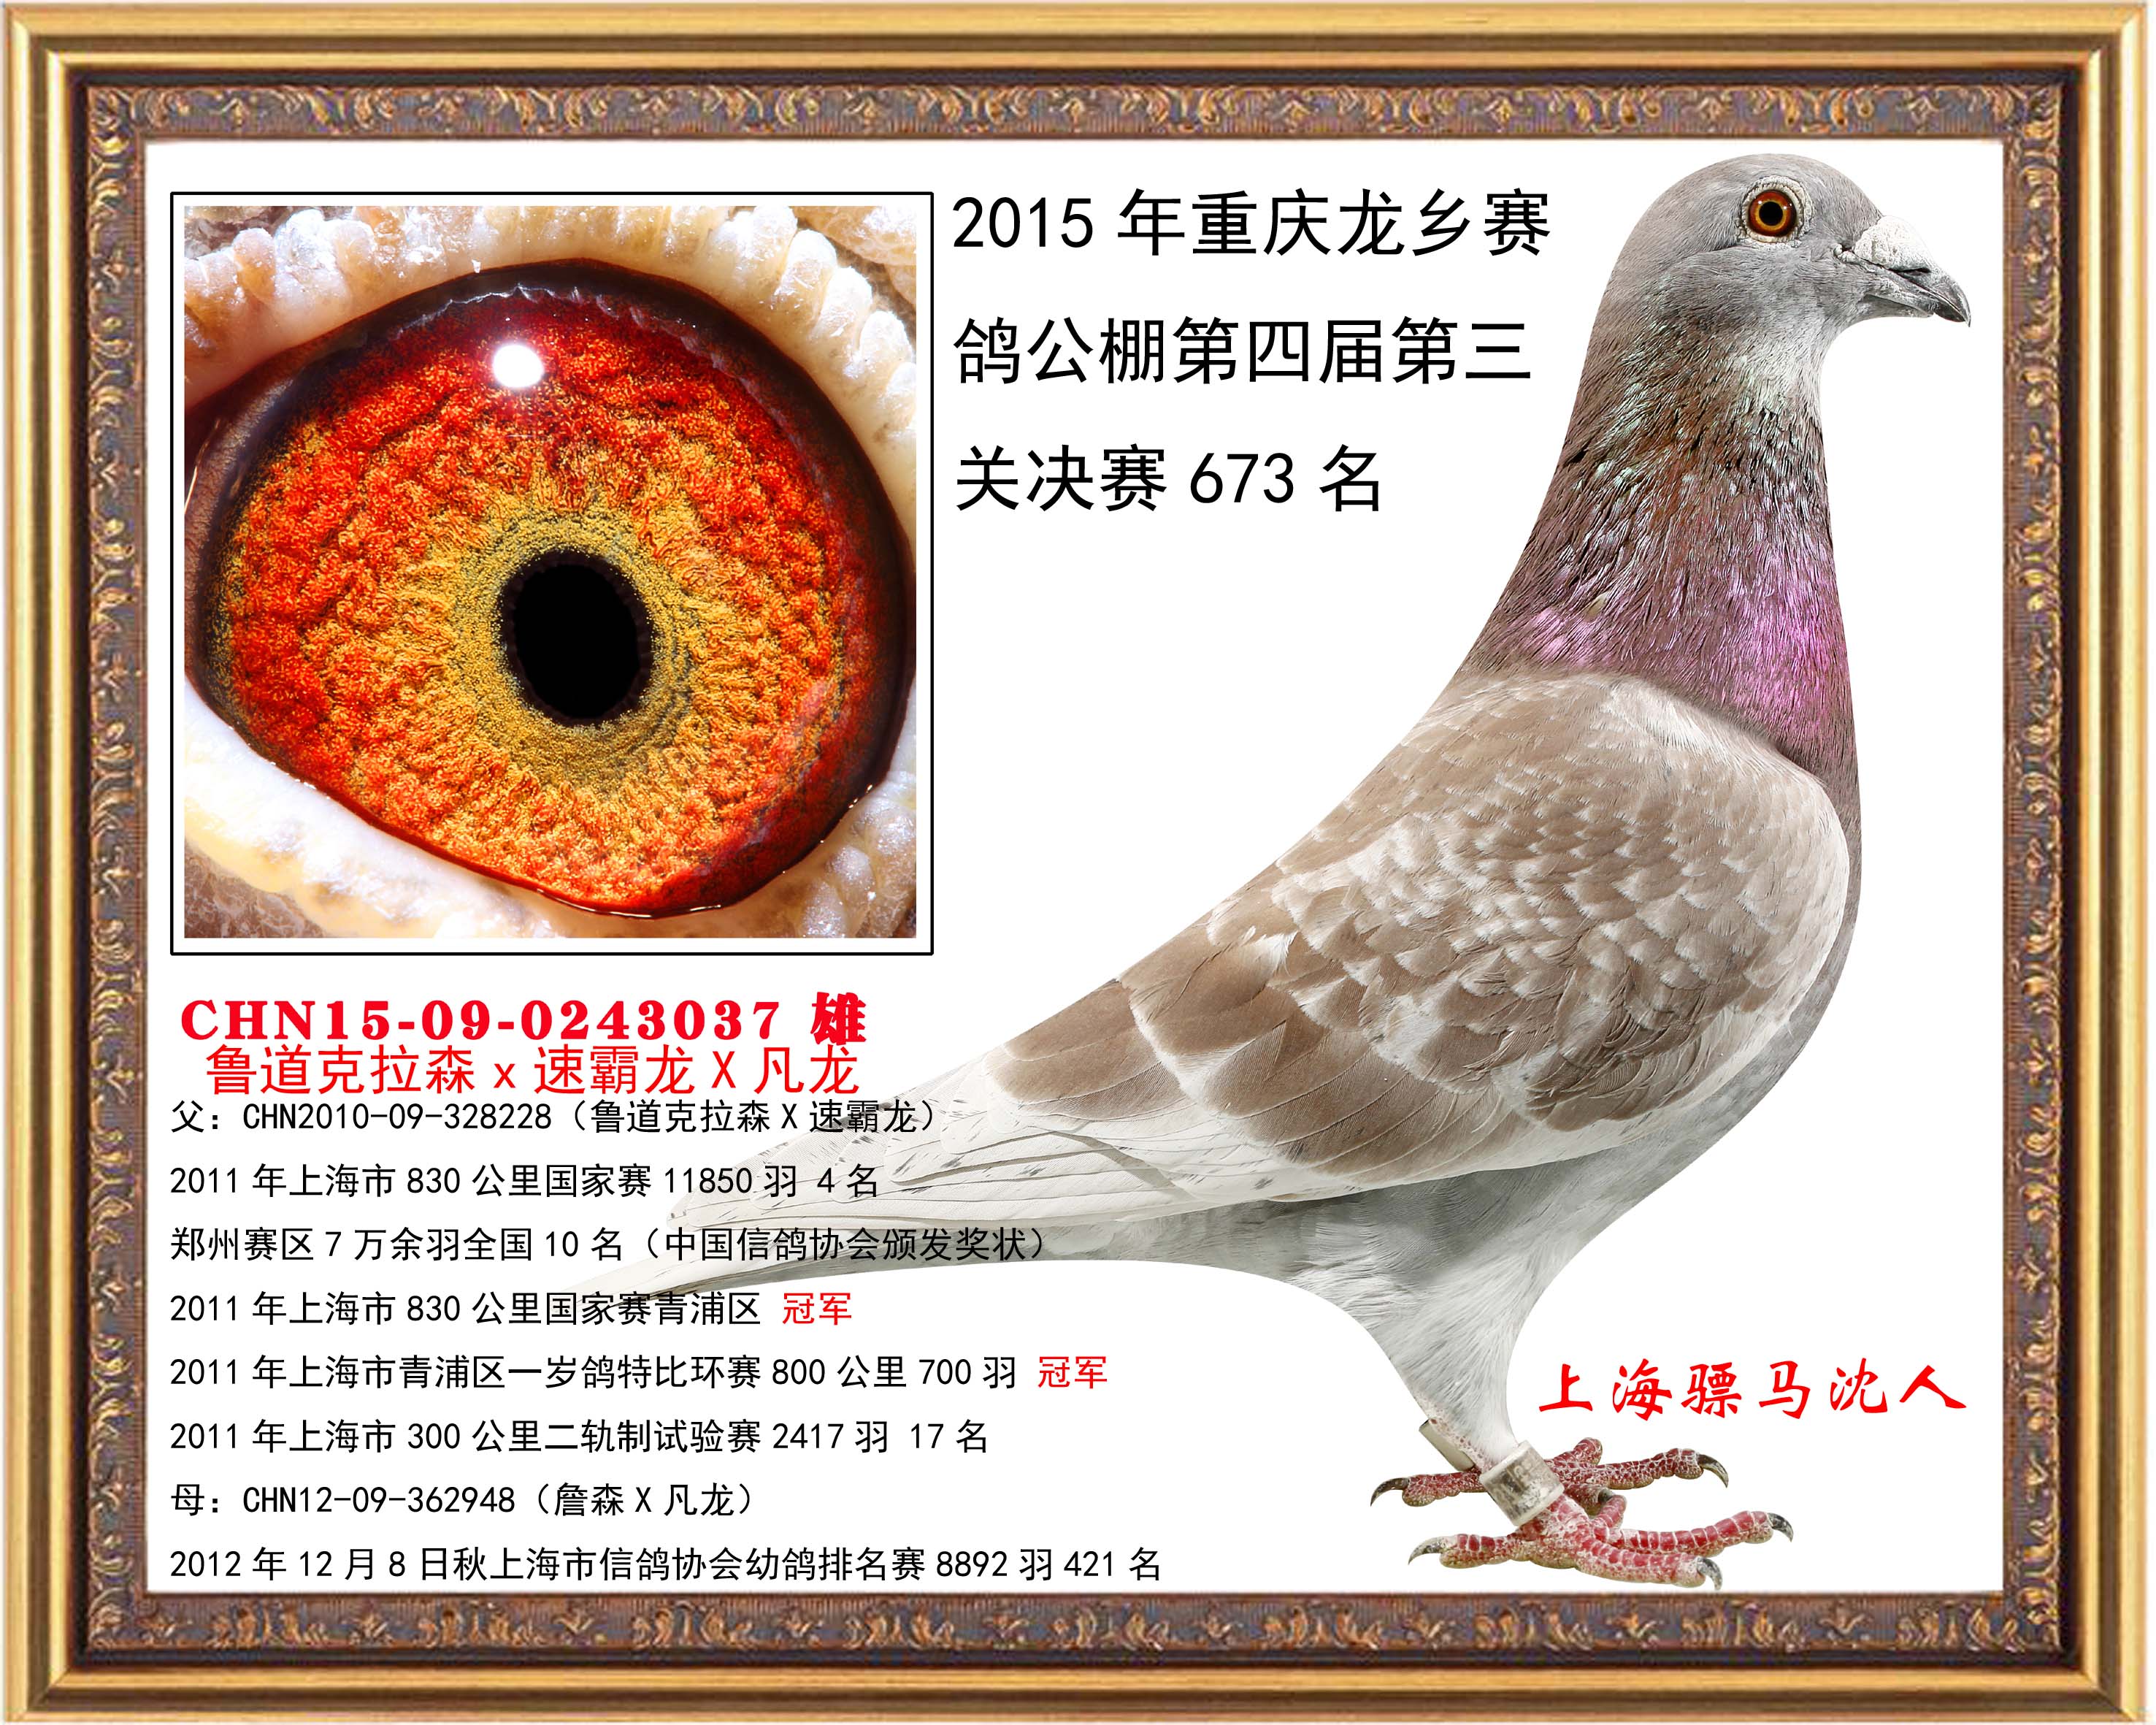 鸽友通: 详细介绍   2015年10月15日重庆龙乡赛鸽公棚